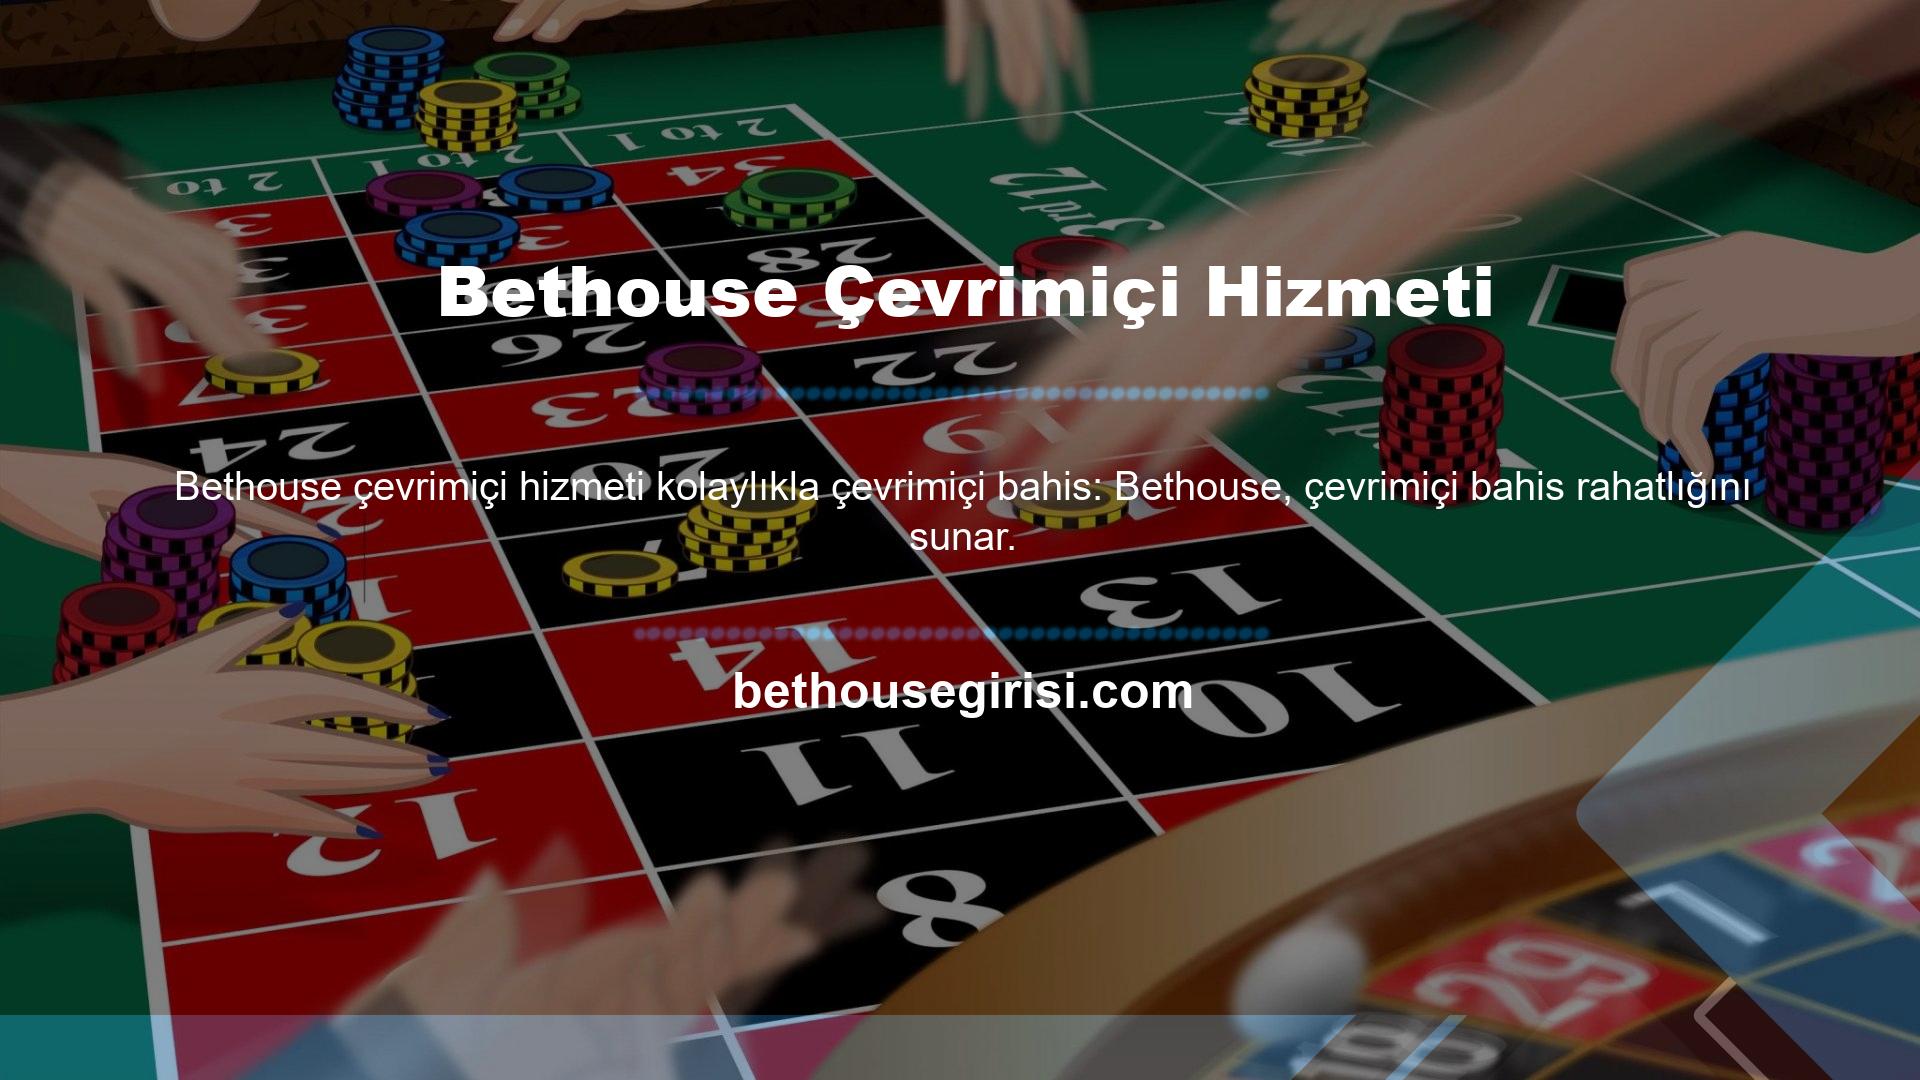 Bethouse çevrimiçi hizmetinde, bahis hizmetlerinde ve casino oyunlarında en gelişmiş altyapı teknolojisi kullanılmaktadır